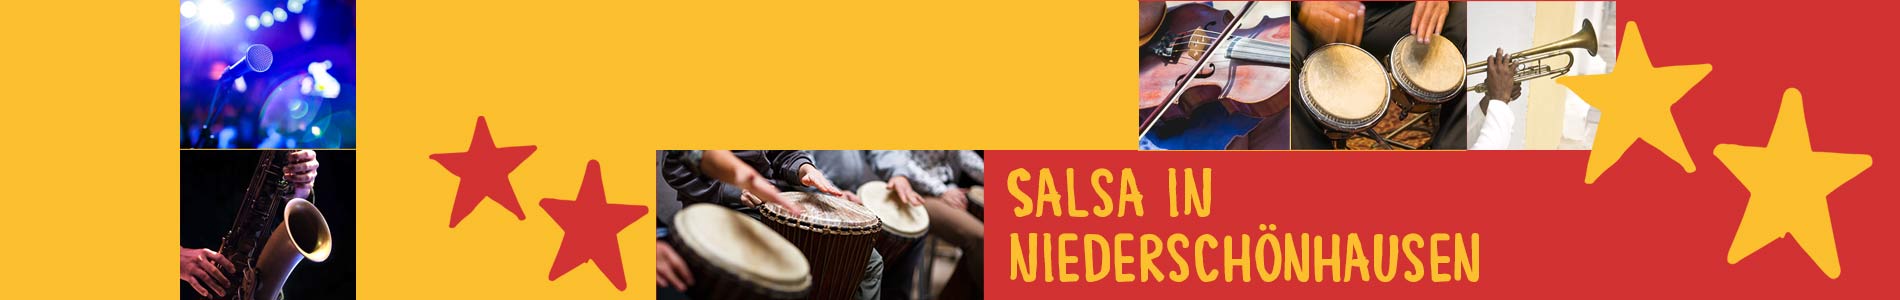 Salsa in Niederschönhausen – Salsa lernen und tanzen, Tanzkurse, Partys, Veranstaltungen